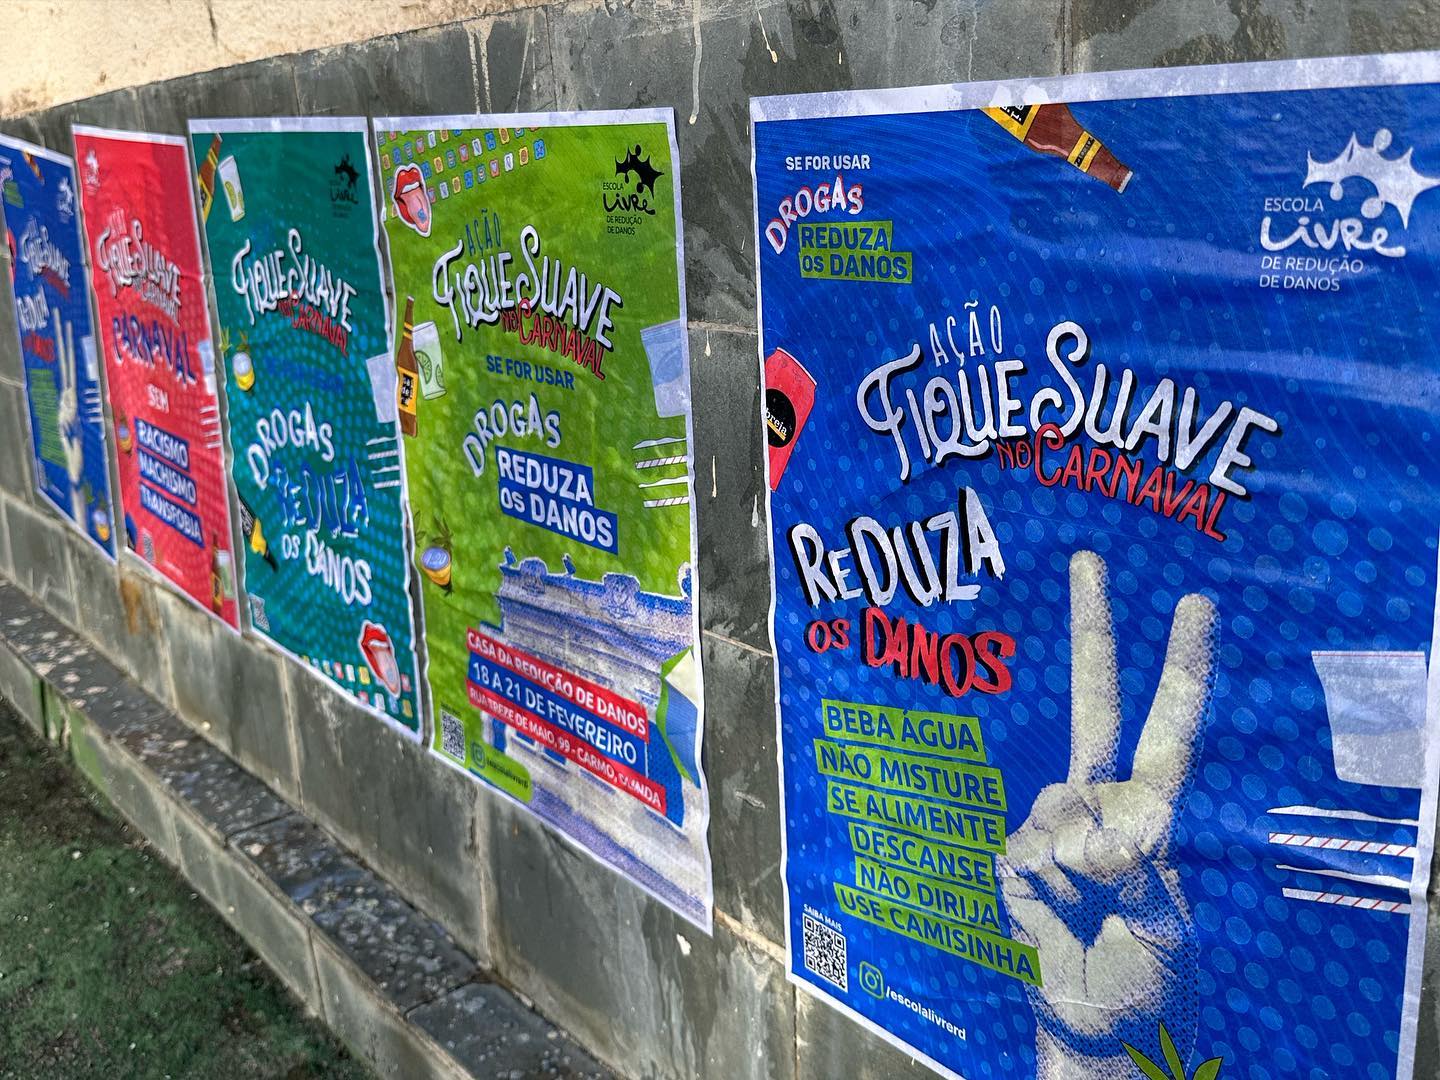 Campanha de redução de danos no Carnaval de Pernambuco: ataques e tentativas de criminalização (Foto: Divulgação / Escola Livre de Redução de Danos)